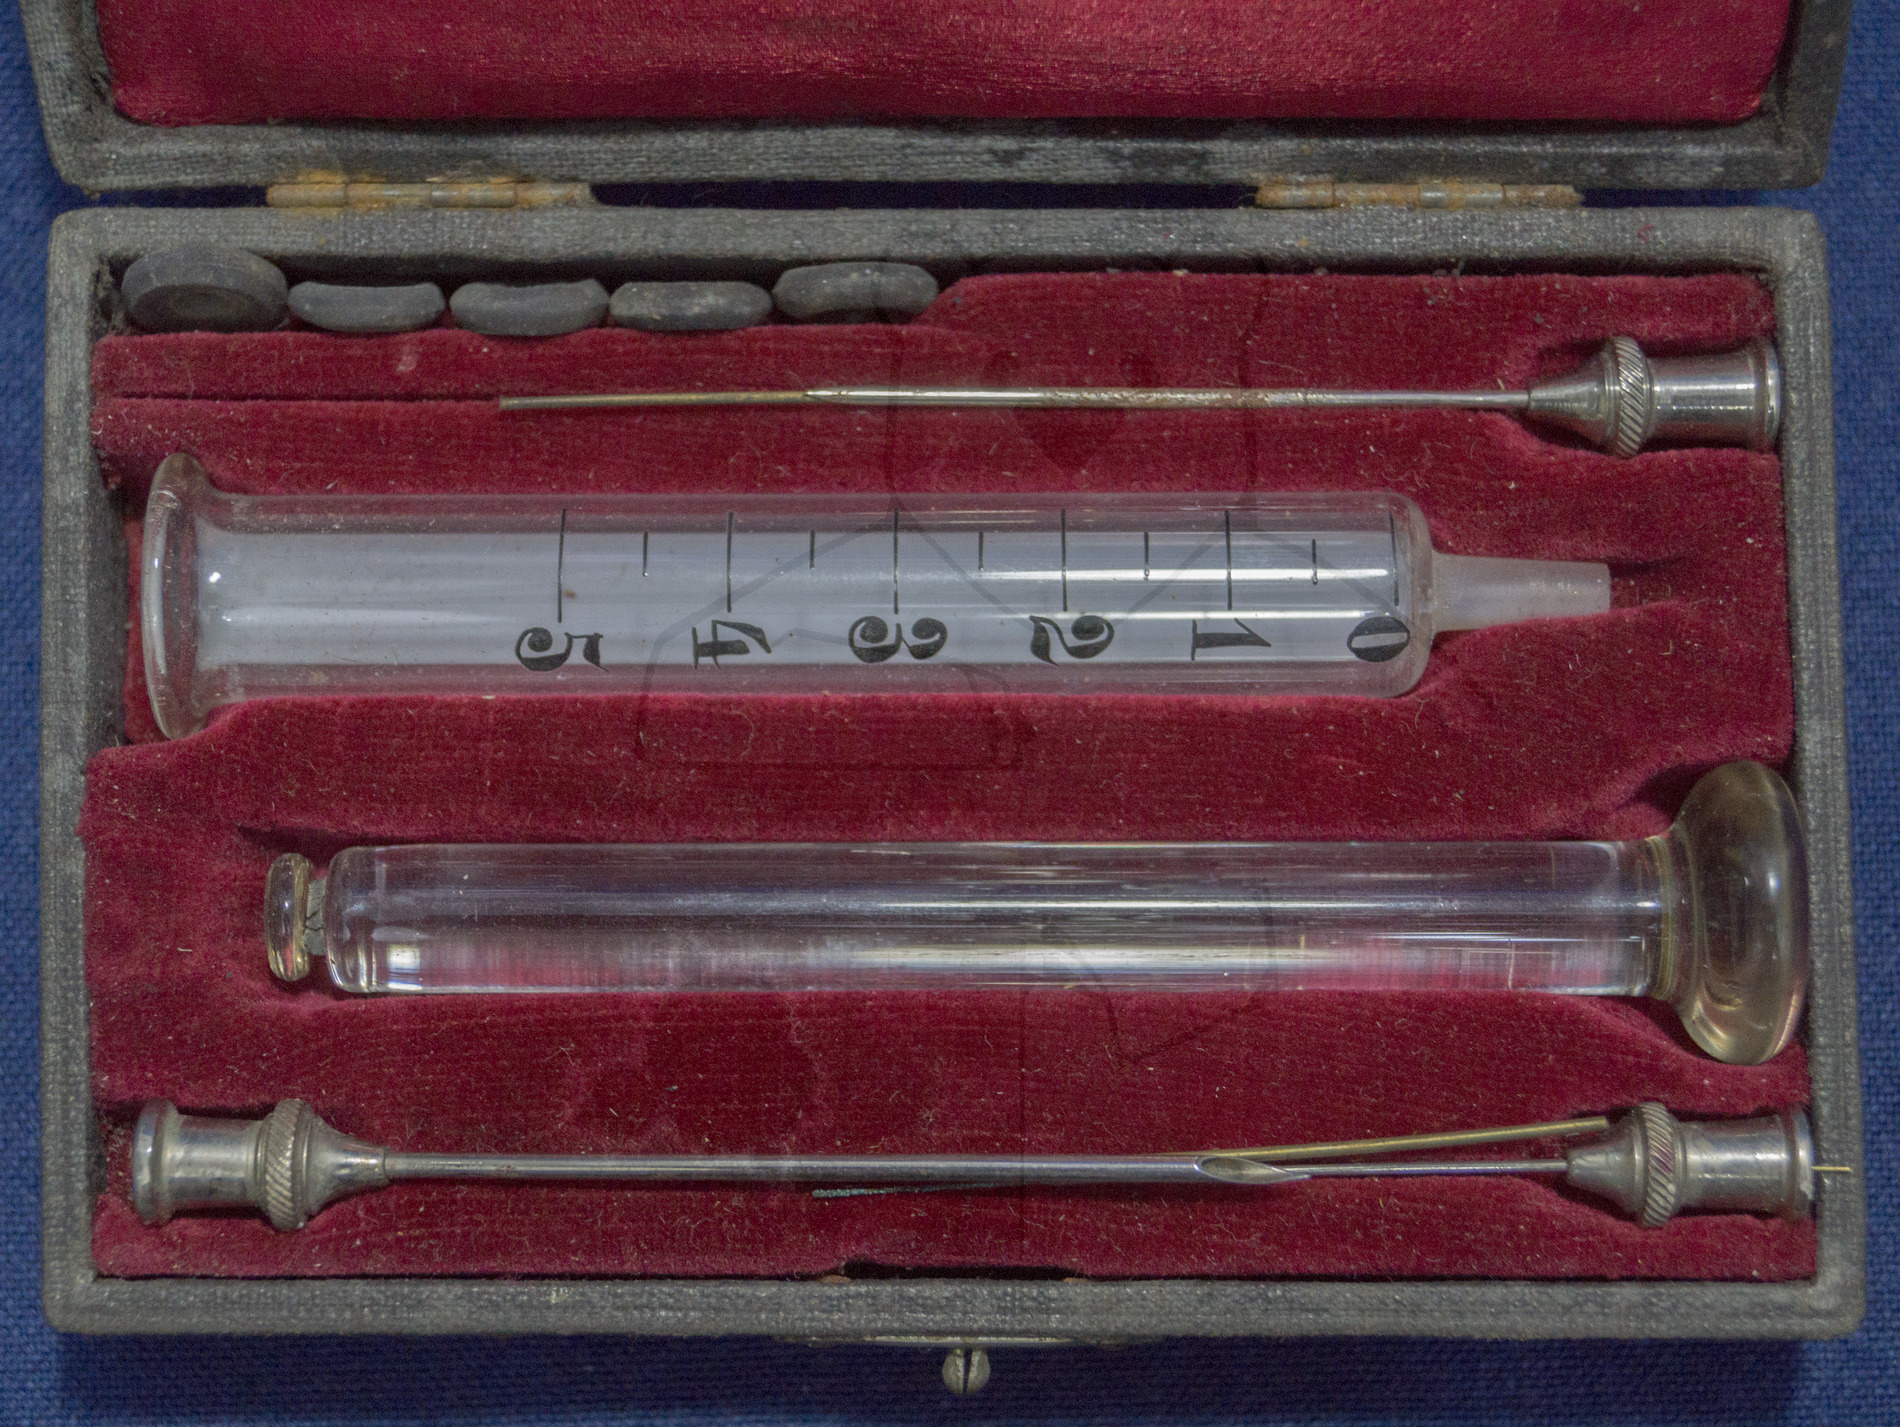 Handgemachte Glasspritze und Kanülen, um 1900, Etui mit Spritze, Stempel, Kanülen, Dichtungen und Reinigungsdrähten